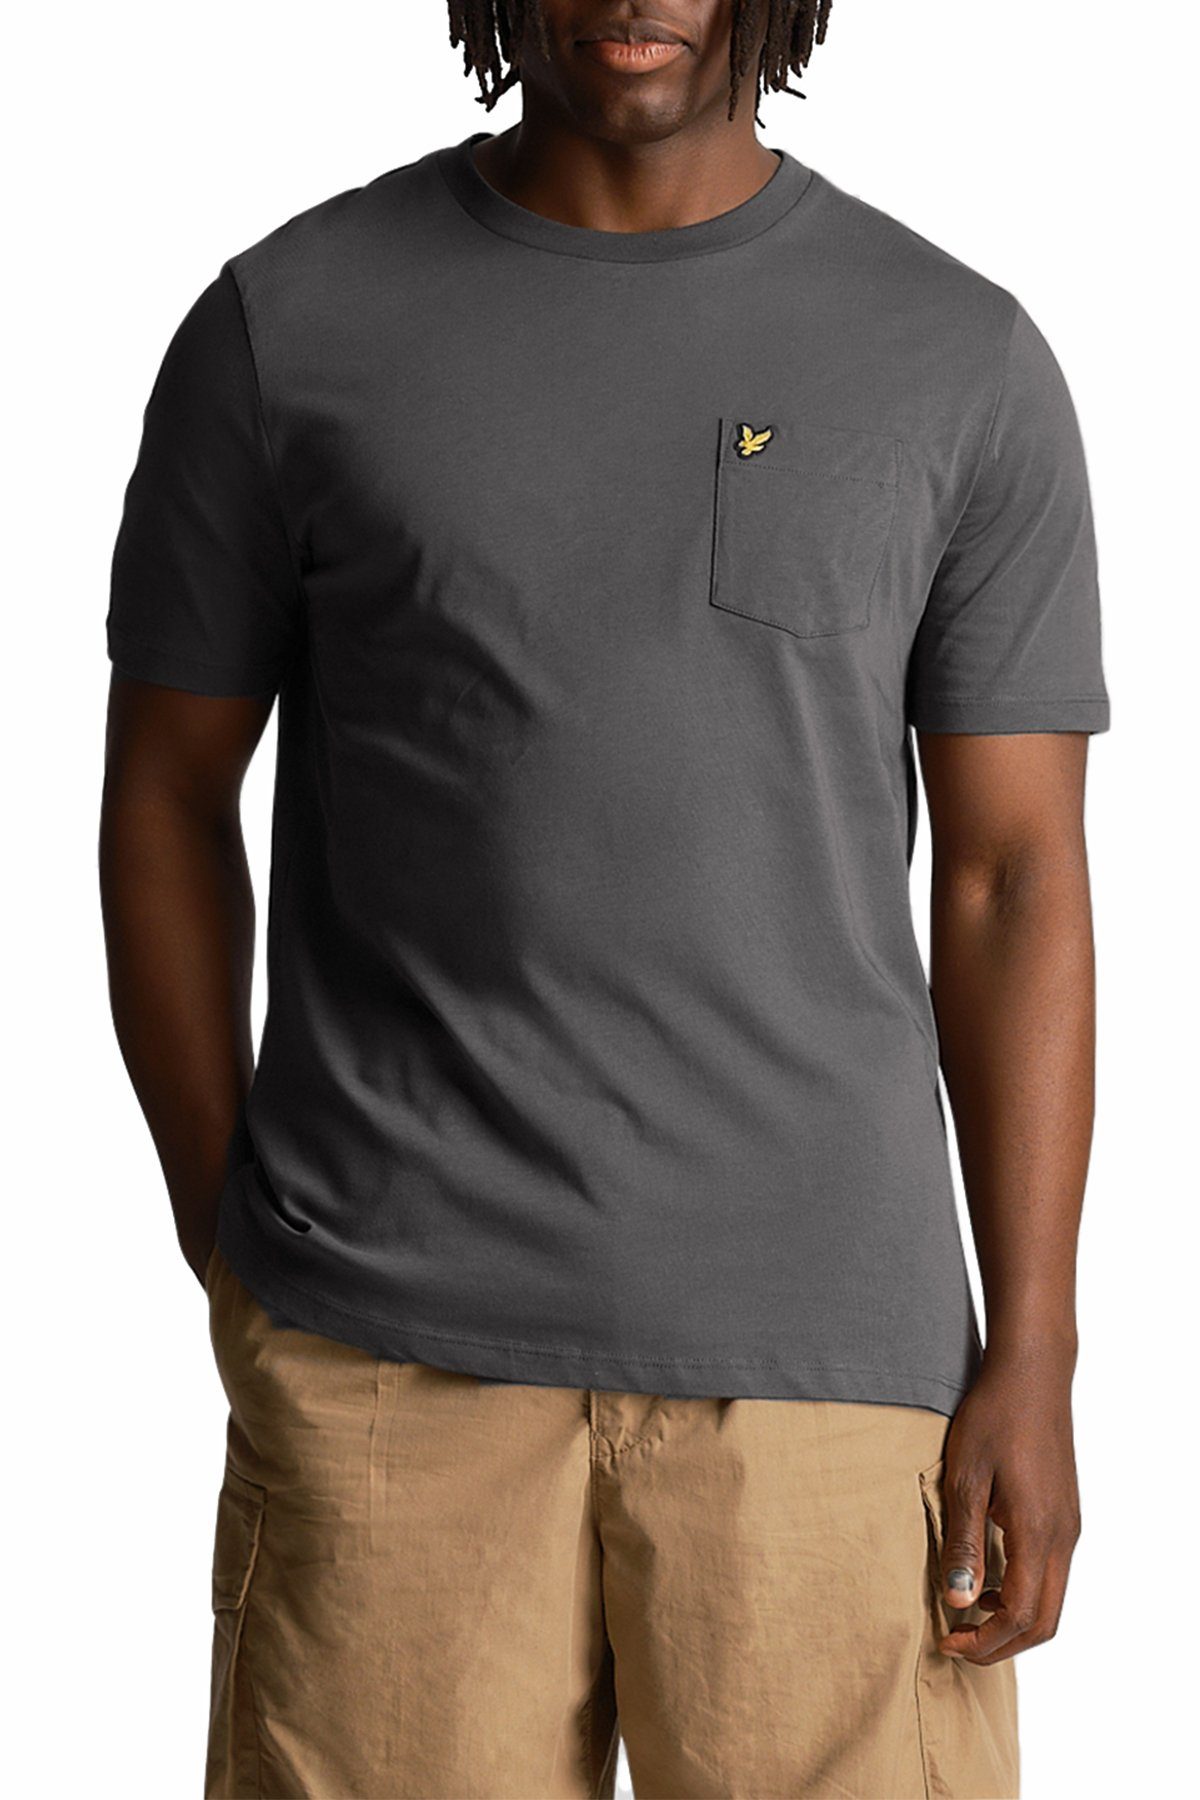 Lyle & Scott T-Shirt Baumwolle, Mit Logo, Rundhalsausschnitt Und Tasche Anthrazit